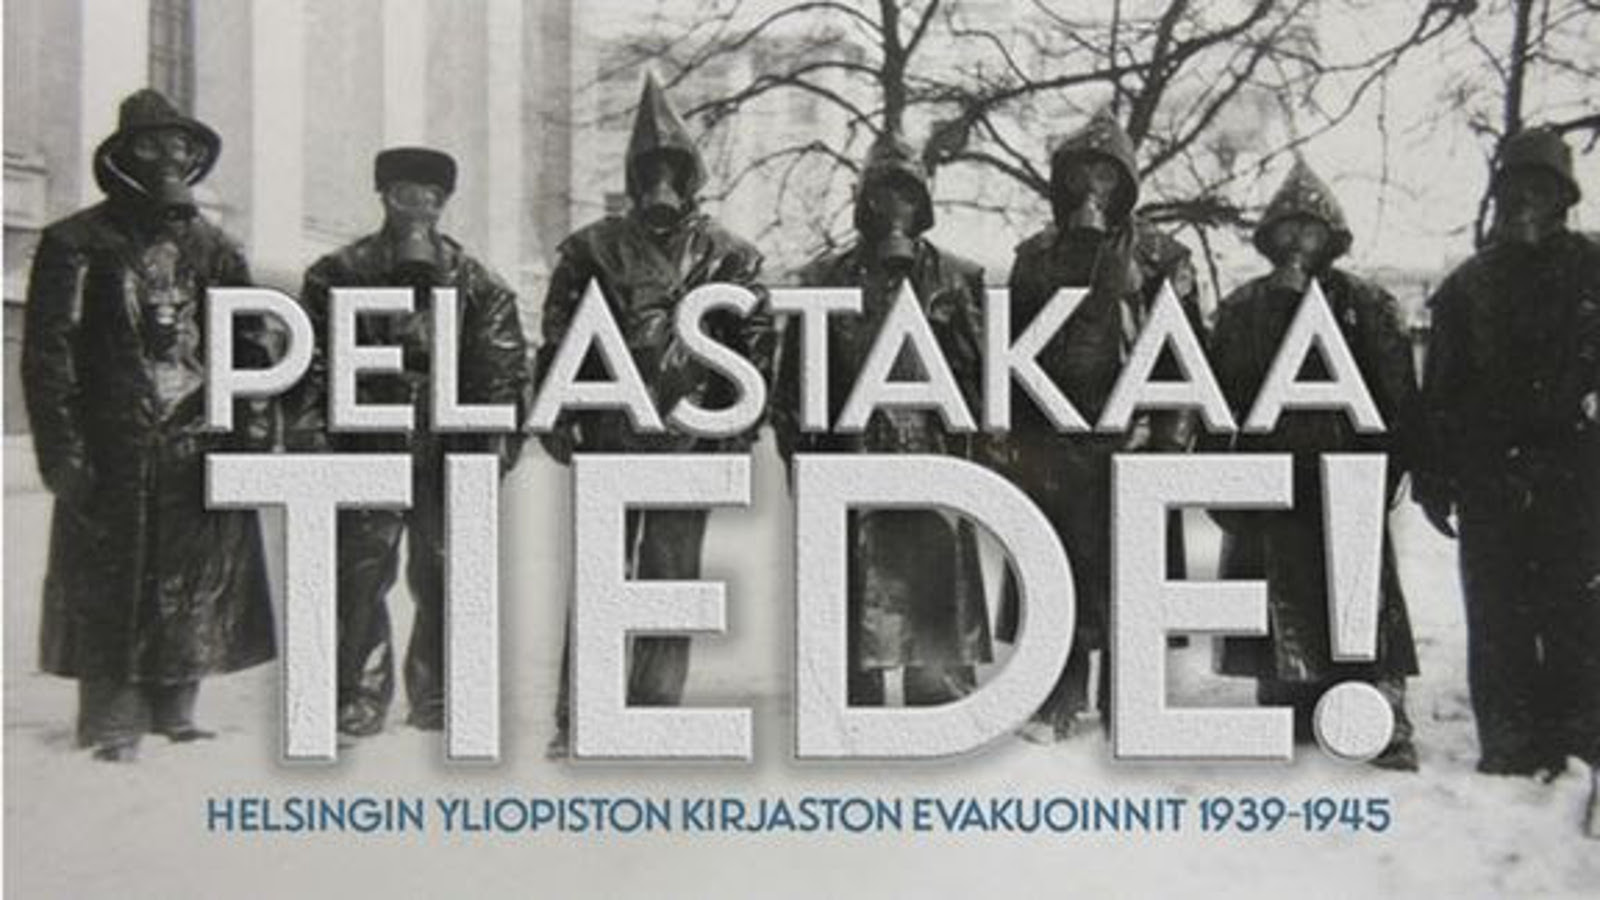 Kuvassa on ihmisiä seisomassa mustissa sadetakeissa ja kaasunaamarit kasvoillaan. Heidän edessää on teksti isoin vaalein kirjaimin  Pelastakaa tiede. Alla on pienemmällä sinisin kirjaimin Helsingin yliopiston kirjaston evakuoinnit 1939-45.